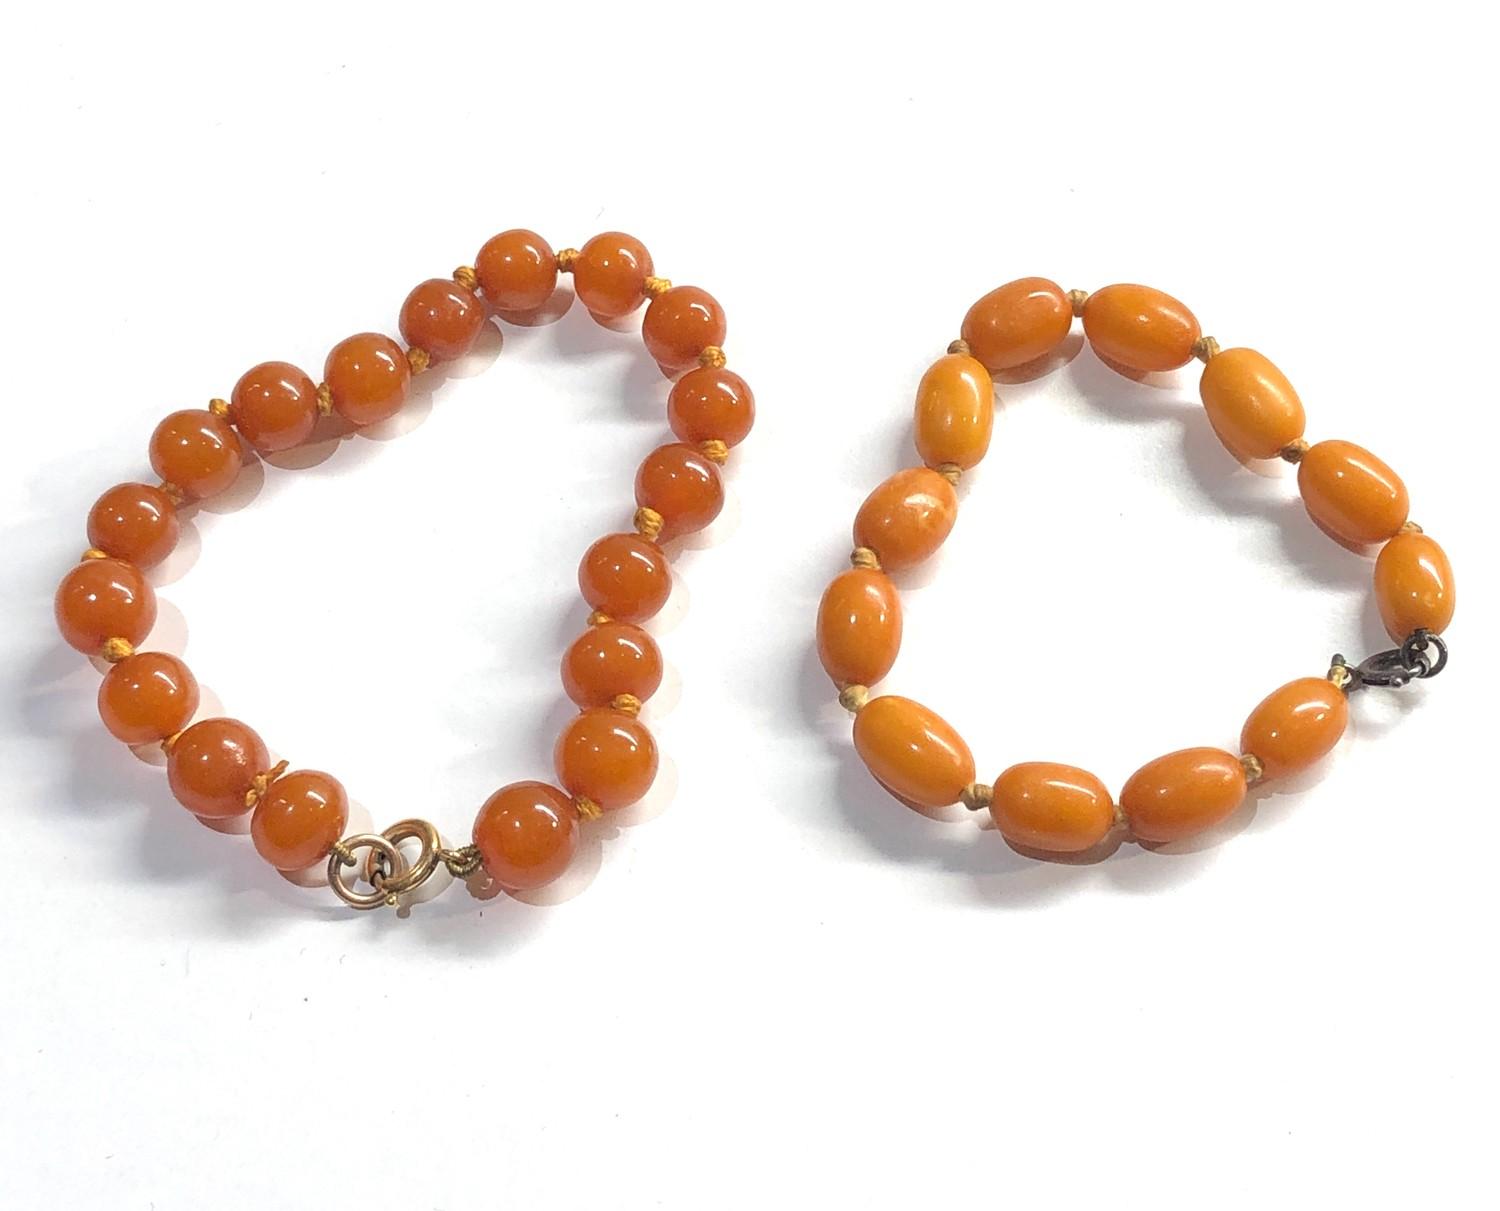 2 butterscotch amber bracelets 14.5g - Image 2 of 3